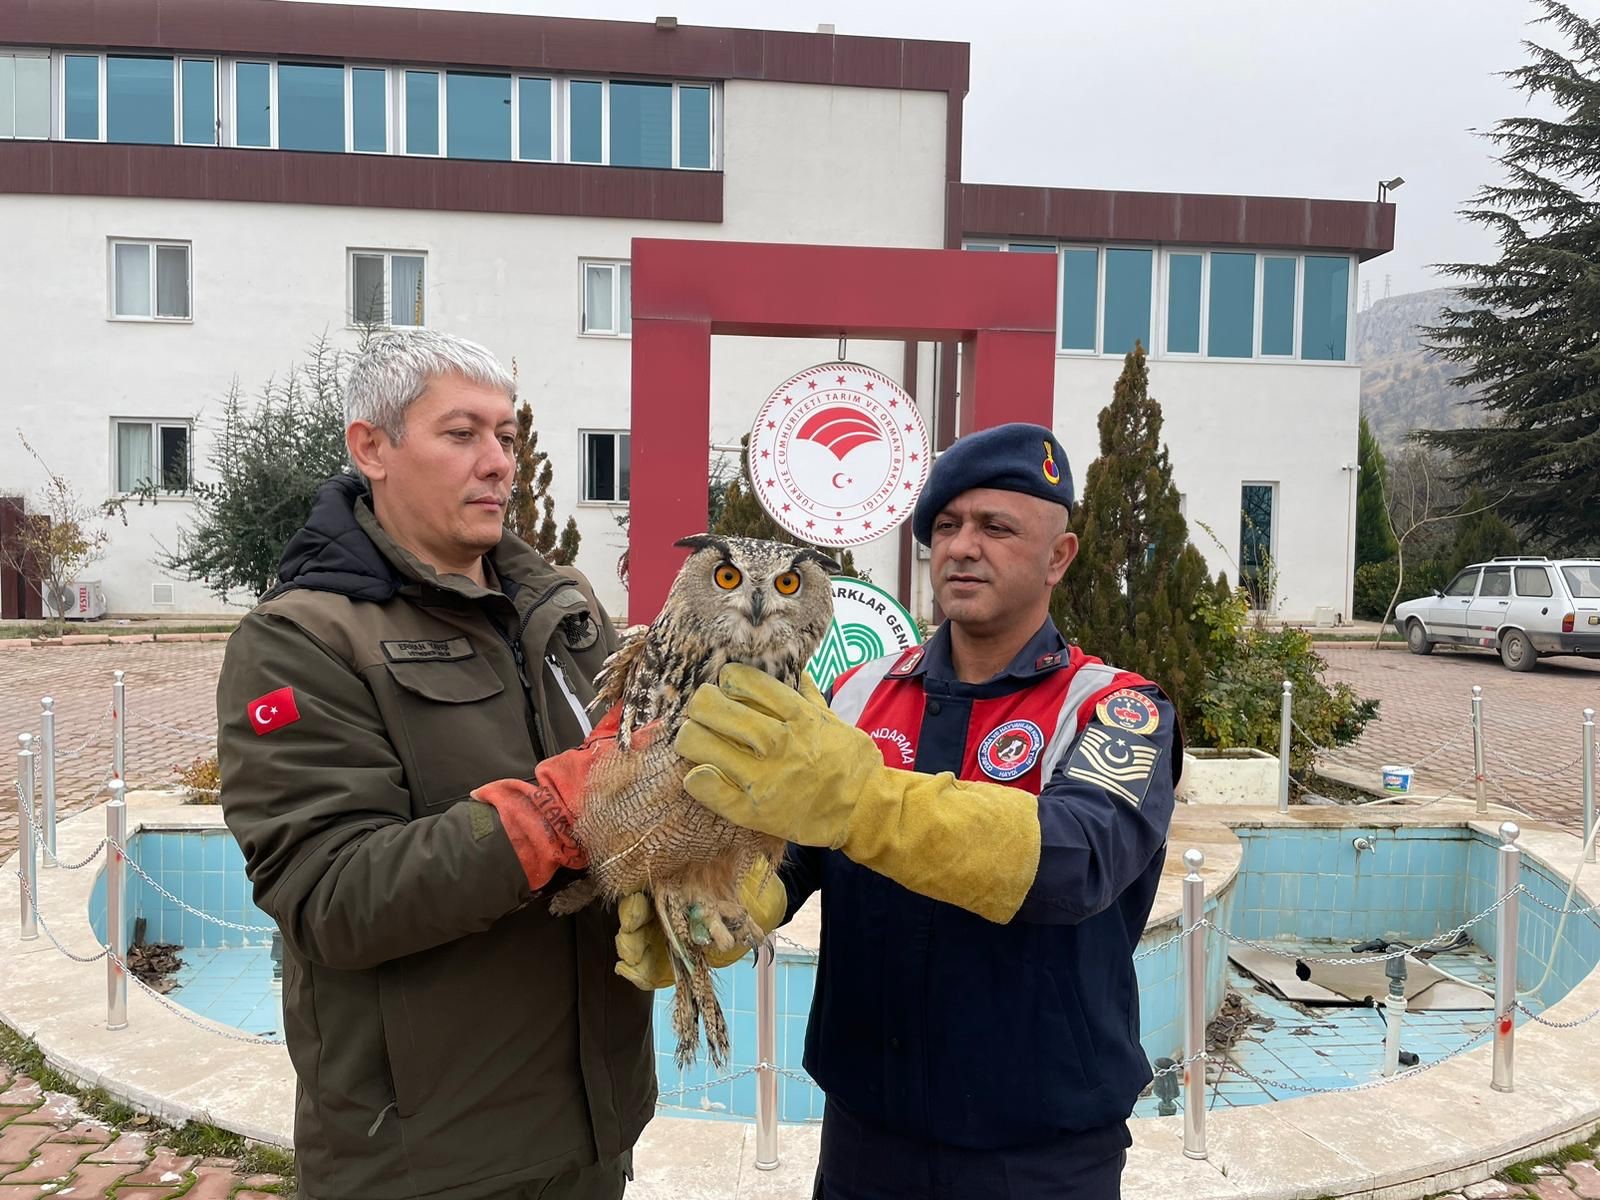 Malatya'da yaralı bulunan baykuş koruma altına alındı